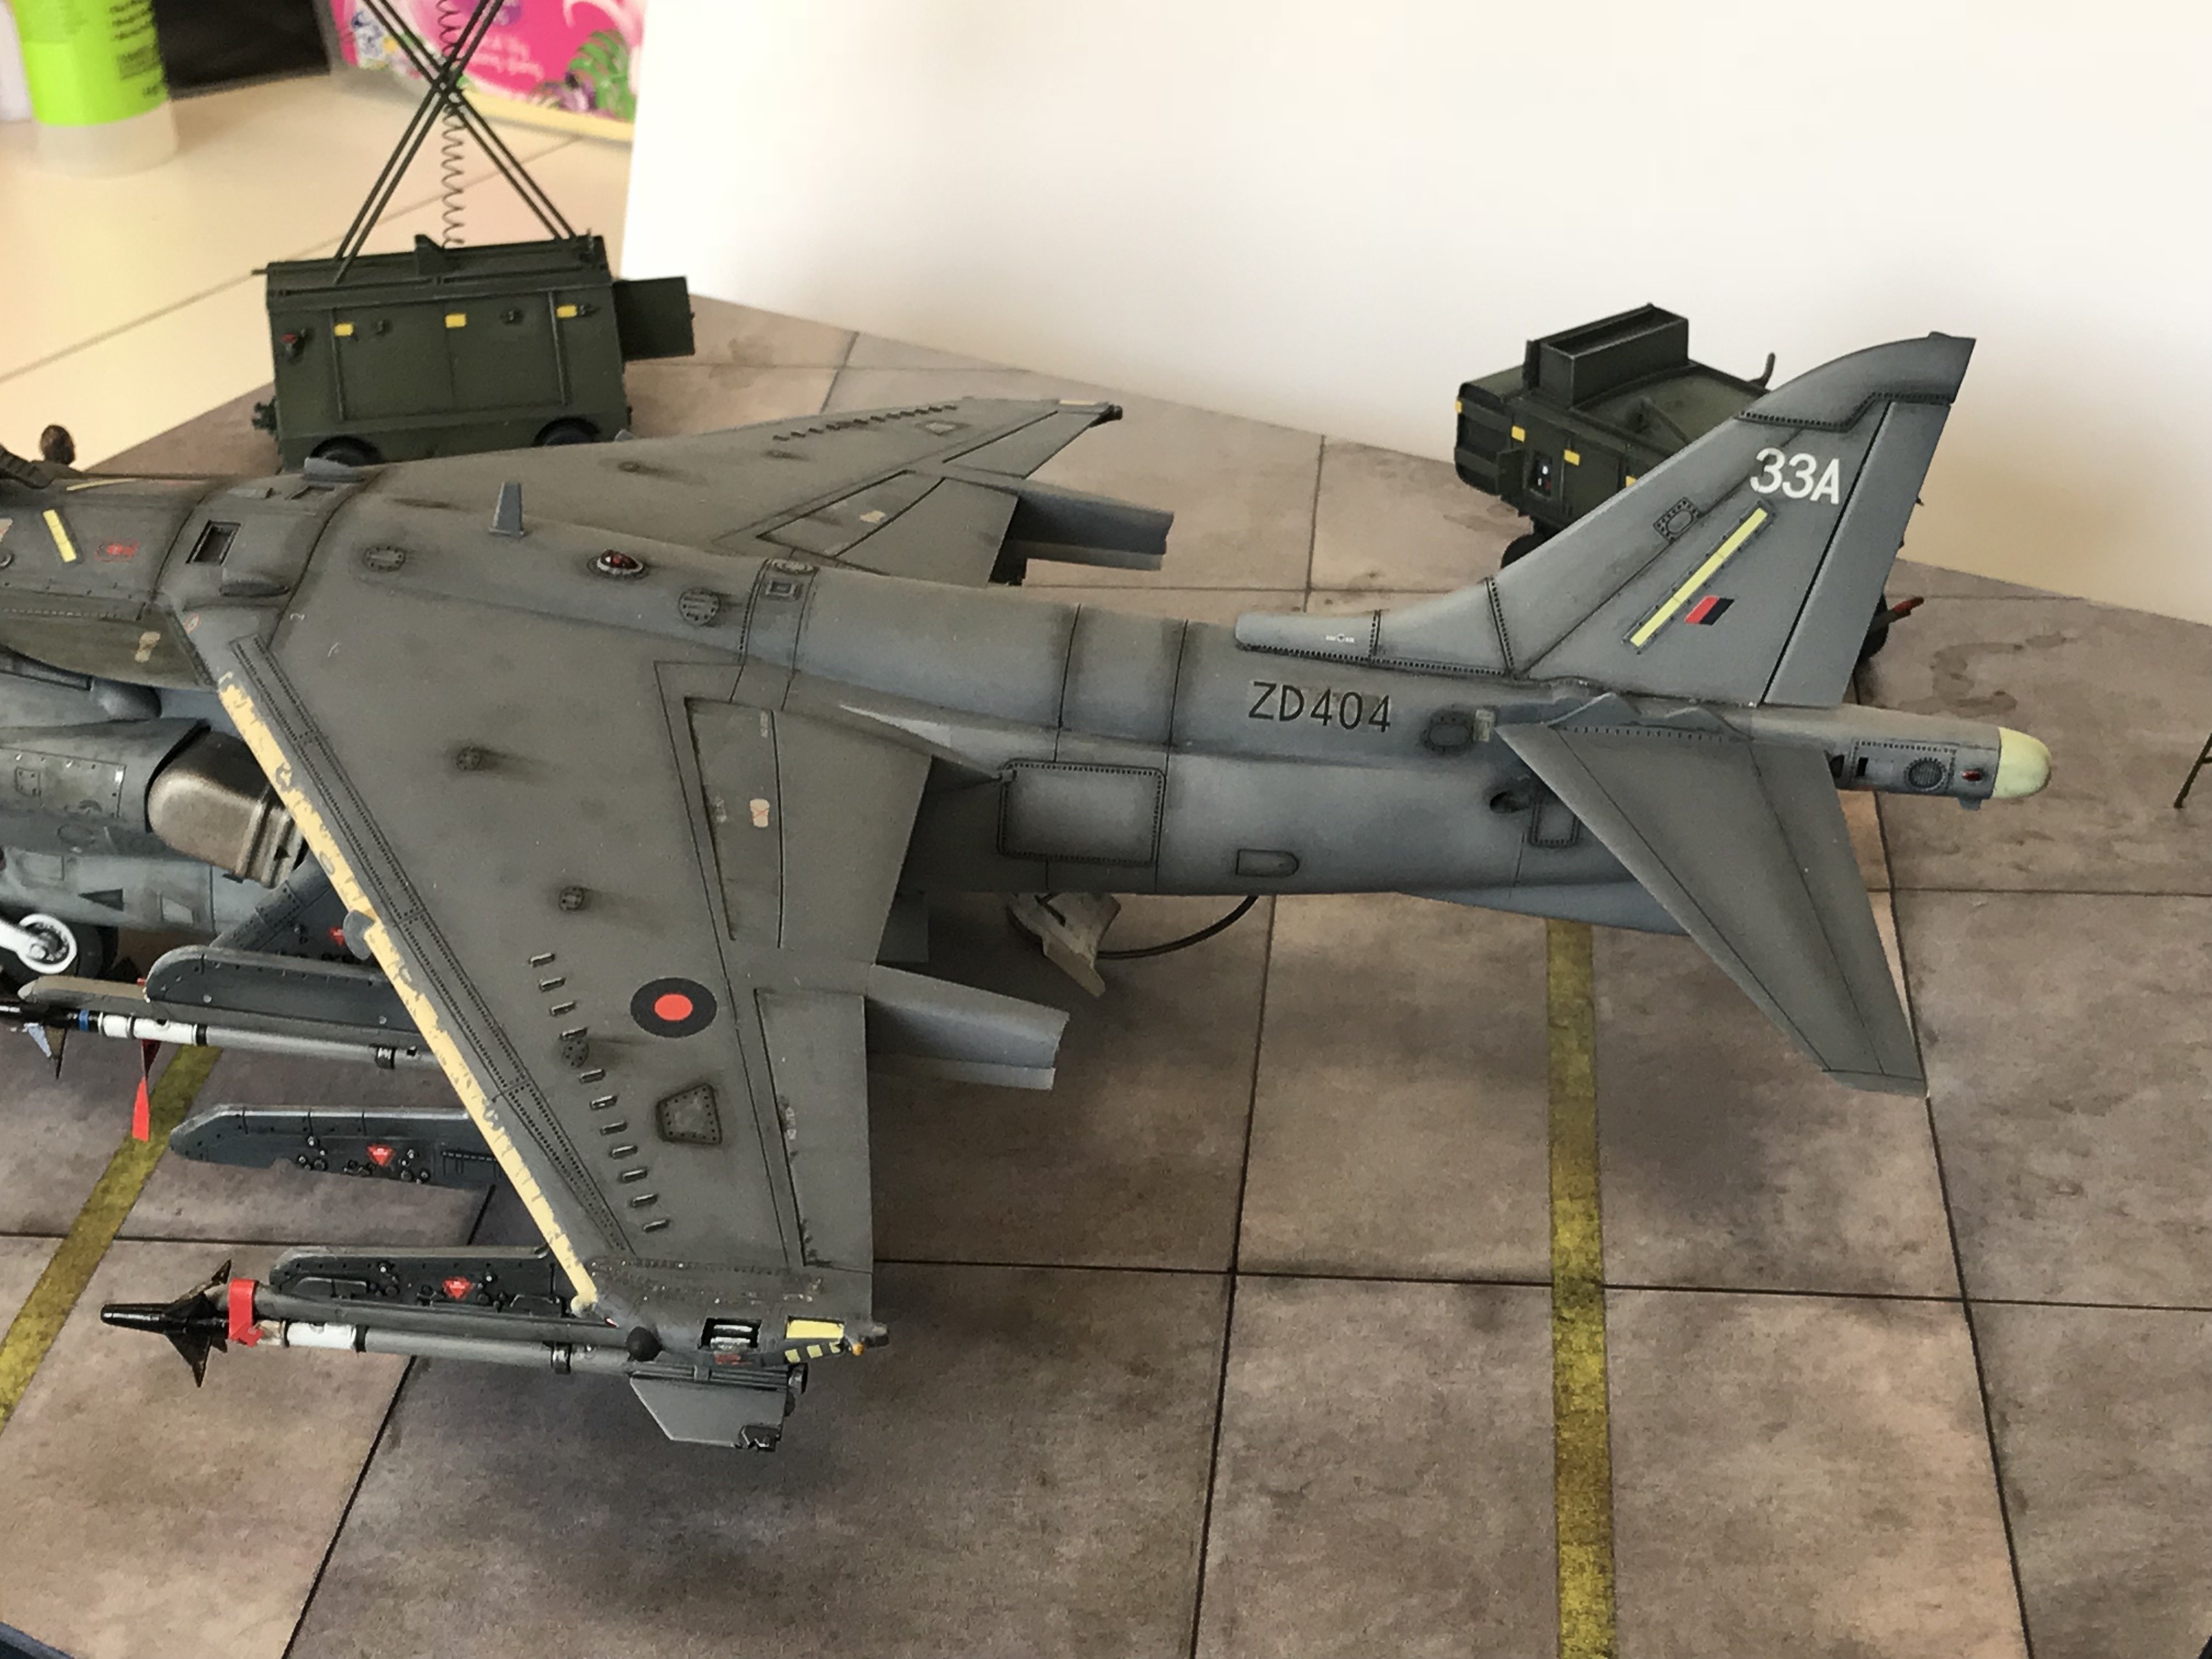 1/32 Trumpeter GR7 Harrier - LSM Aircraft Finished Work - Large Scale Modeller - 4032 x 3024 jpeg 1060kB